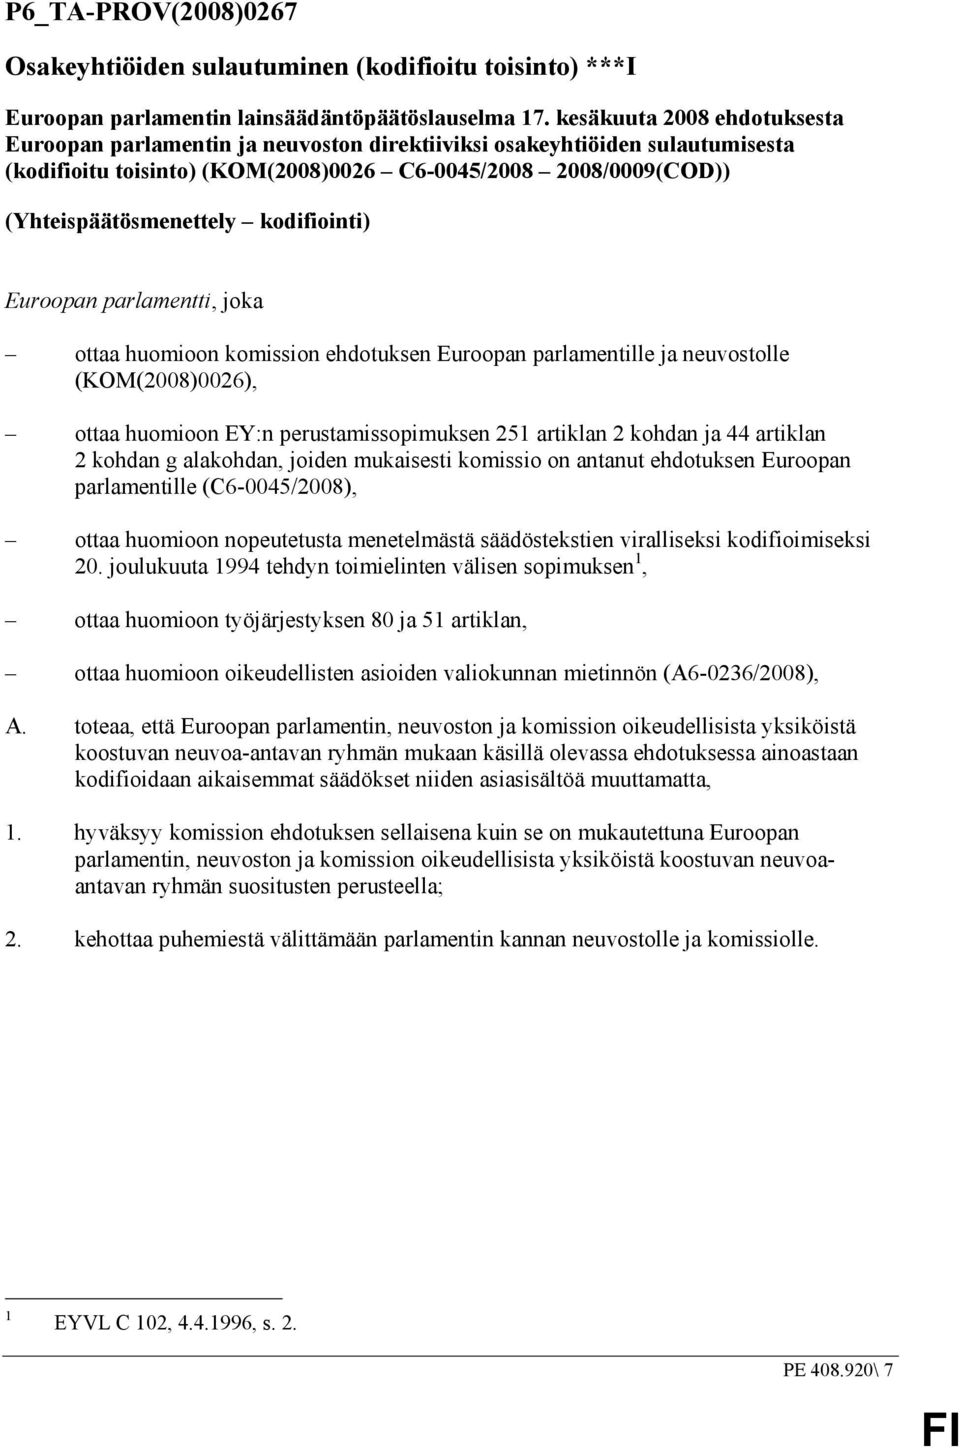 kodifiointi) Euroopan parlamentti, joka ottaa huomioon komission ehdotuksen Euroopan parlamentille ja neuvostolle (KOM(2008)0026), ottaa huomioon EY:n perustamissopimuksen 251 artiklan 2 kohdan ja 44